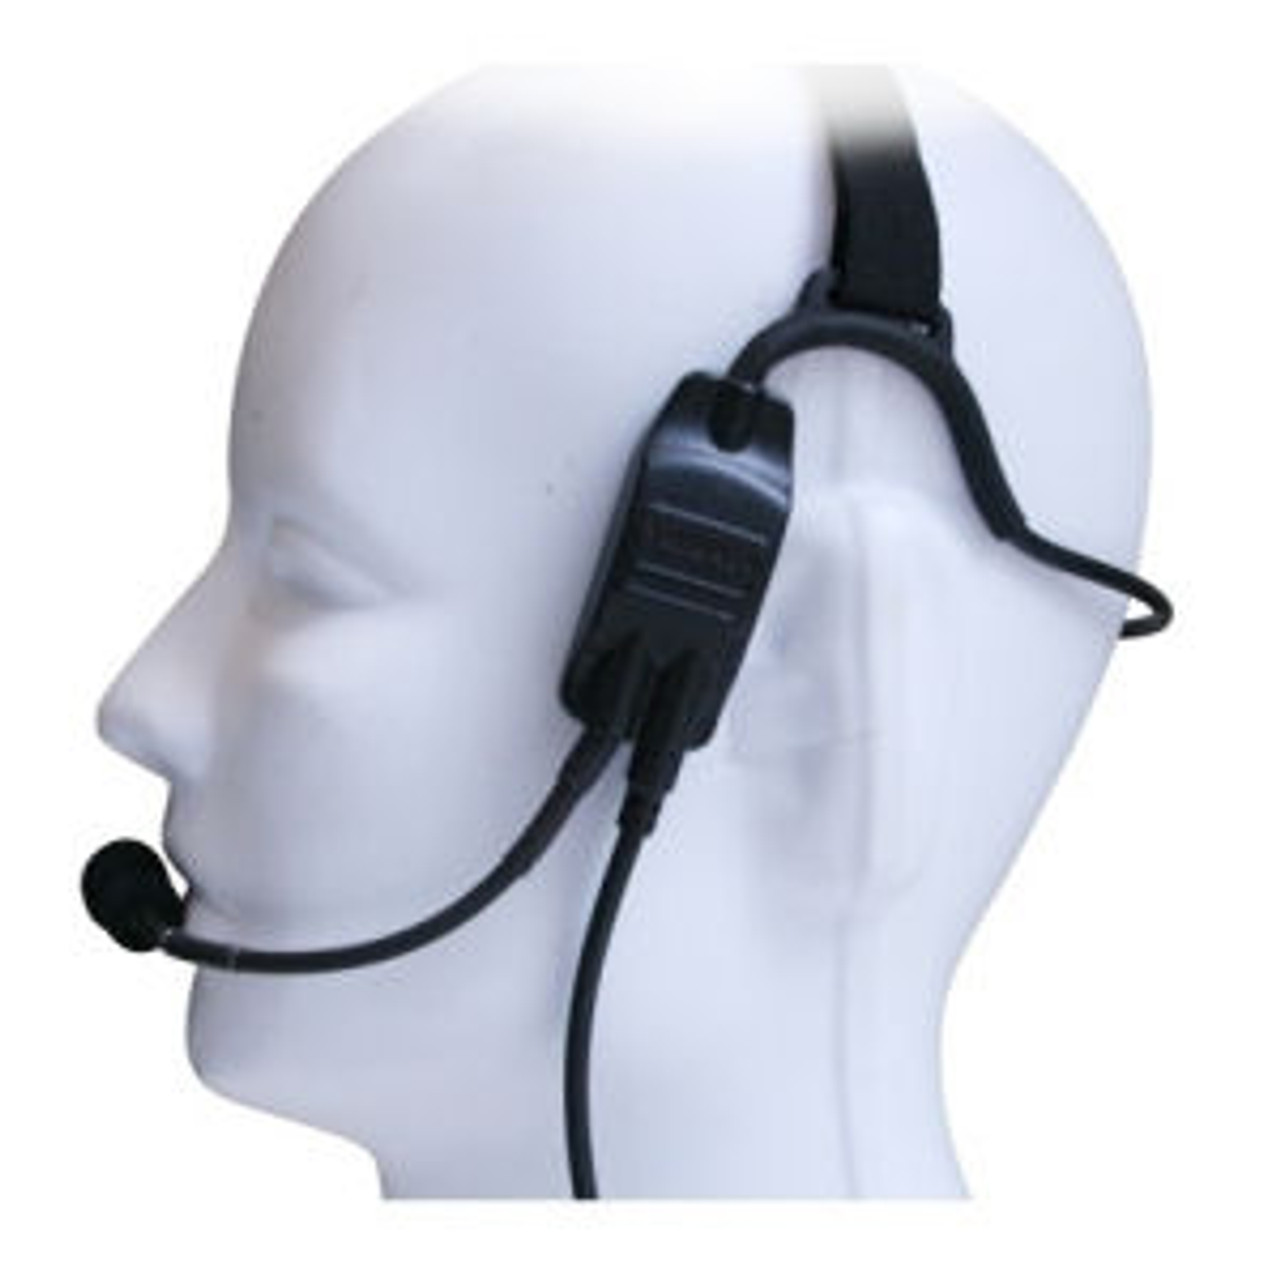 Kenwood TK-3140 Temple Transducer Headset